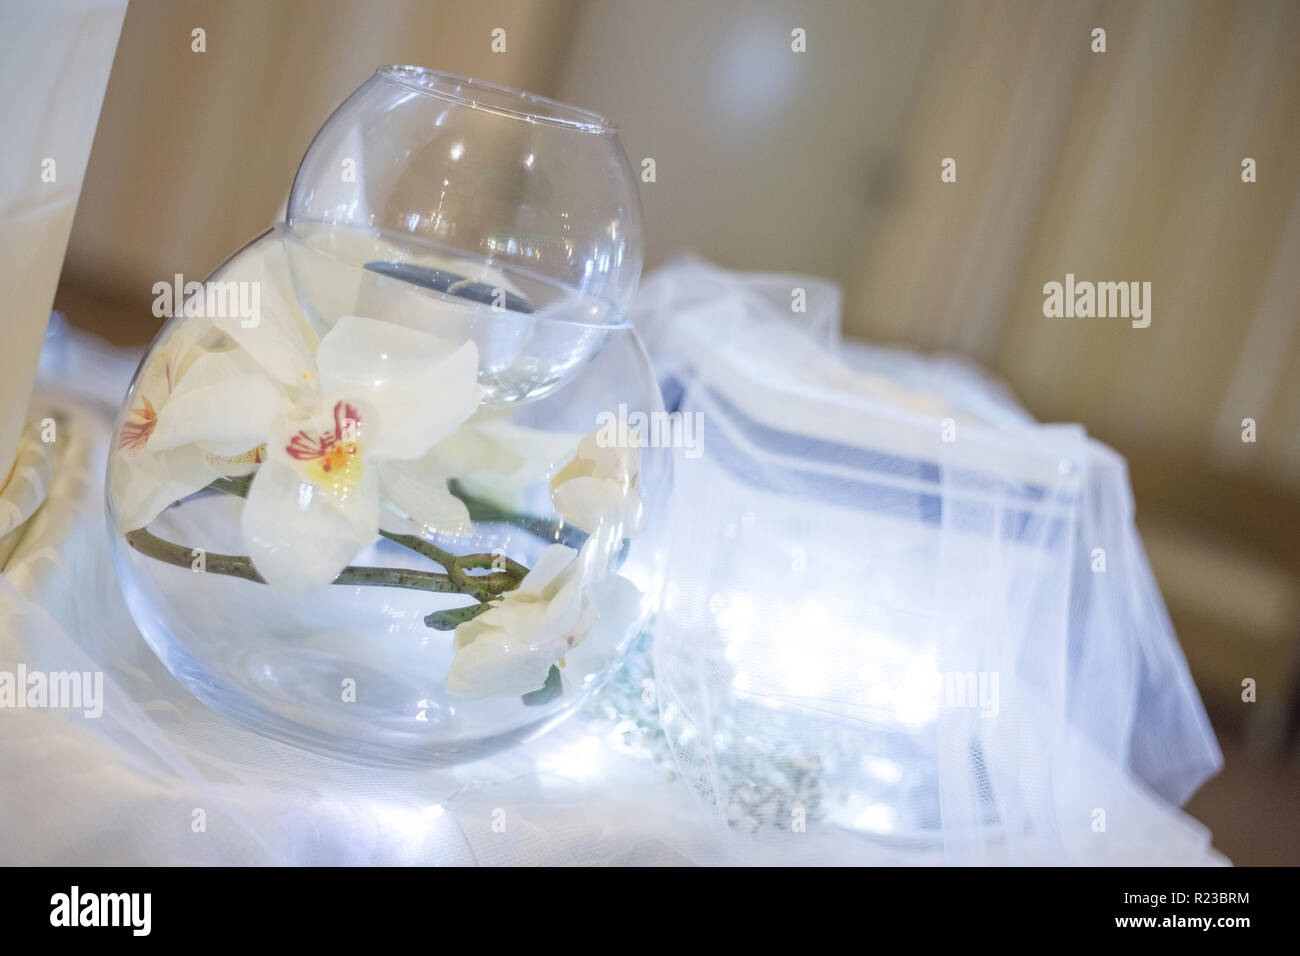 Vaso illuminato con i confetti con white label per personalizzare l'immagine, la corda per la decorazione e il cono per confetti sul tavolo blu. Foto Stock